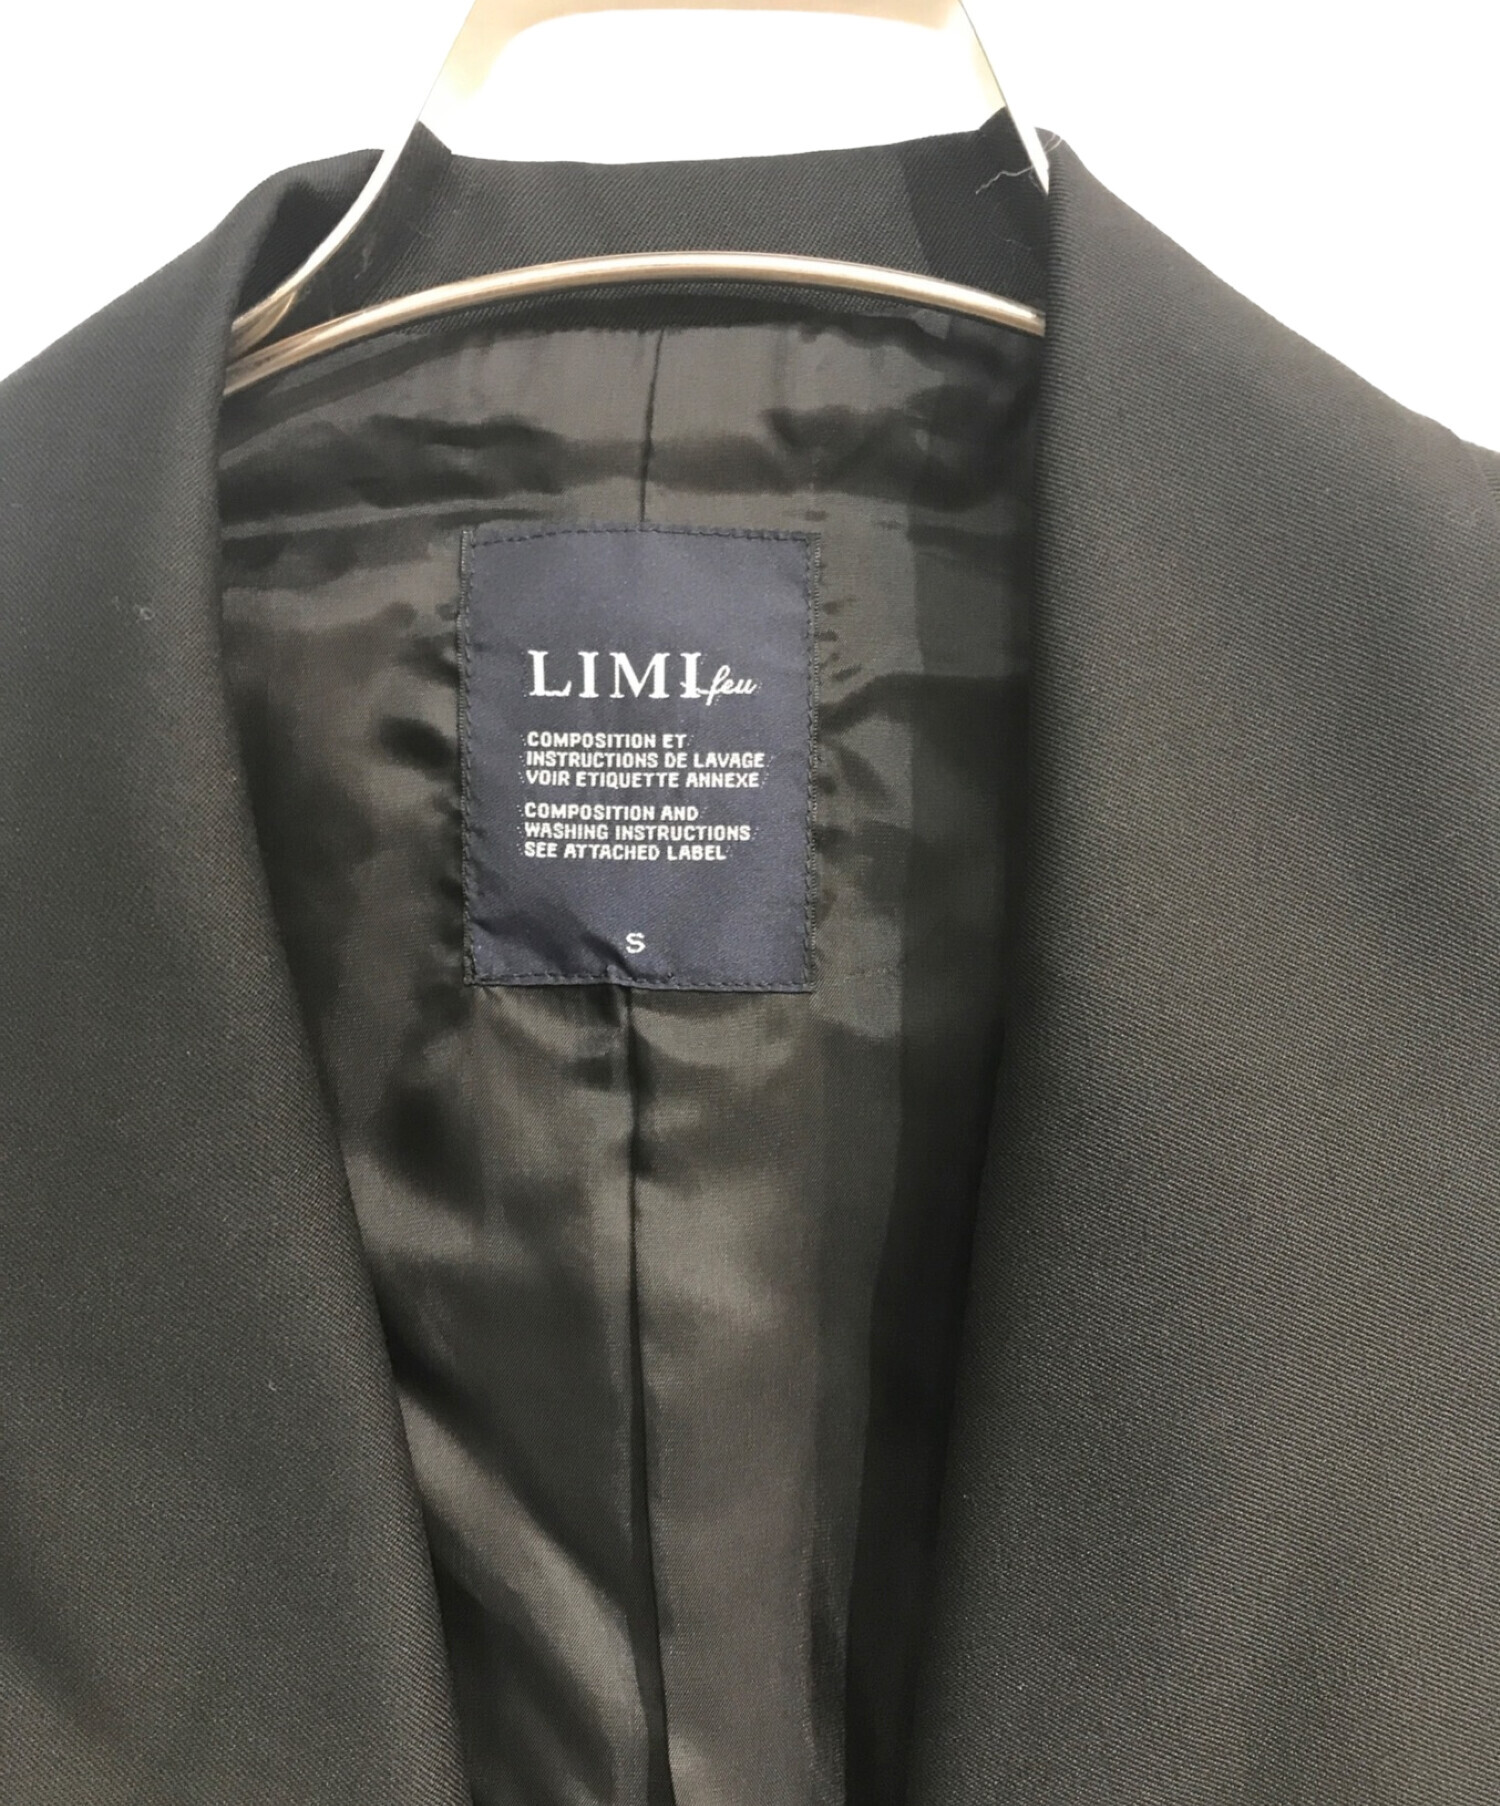 LIMI feu (リミフゥ) ギャバビッグカラーショートジャケット LN-J15-111 ブラック サイズ:S